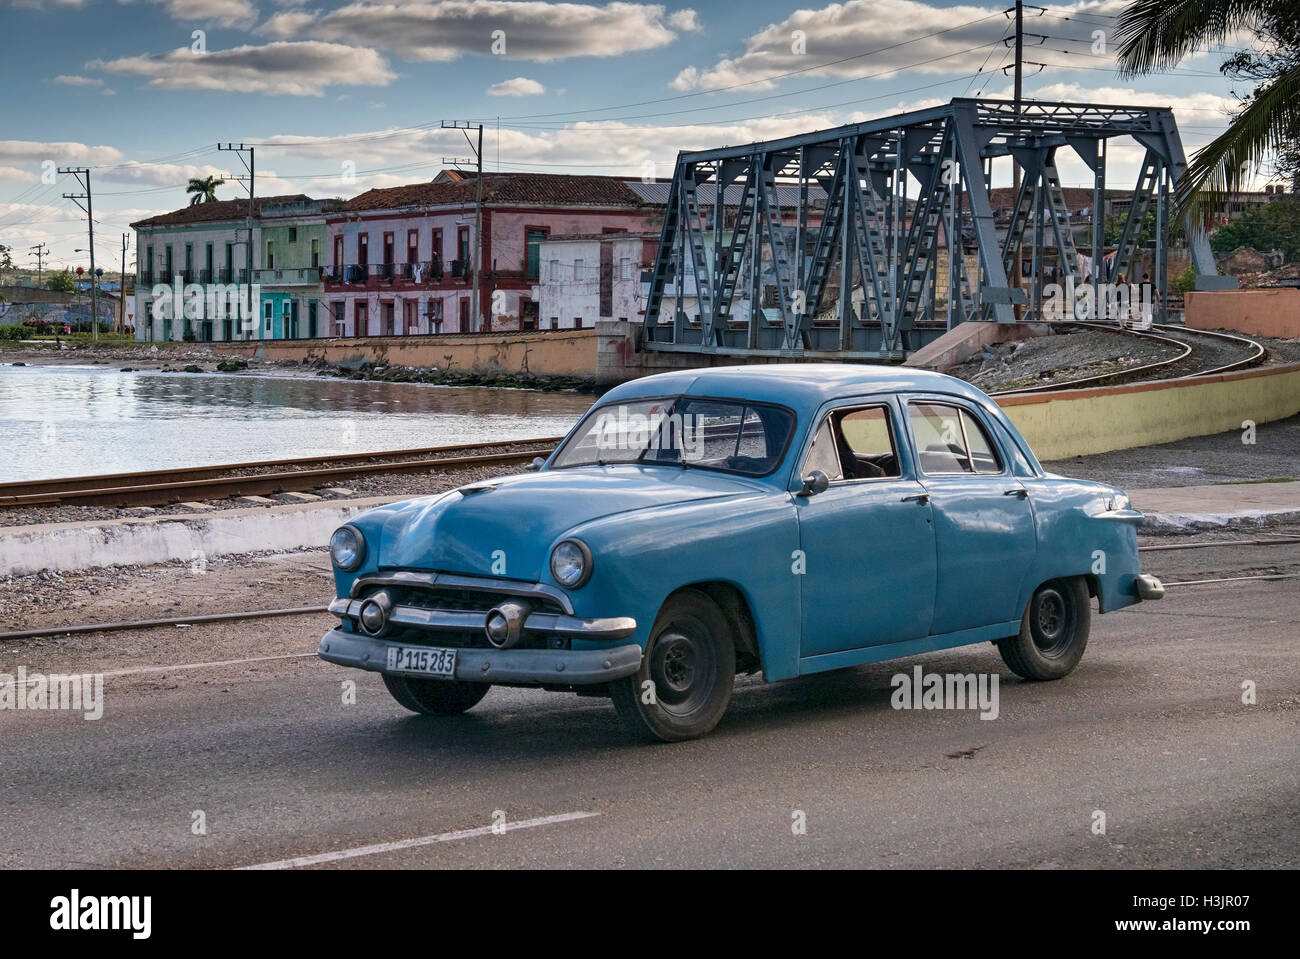 Kubanische Auto auf der Straße Calle 272 unterstützt durch Schiene Brücke & Waterfront Gebäude, Matanzas, Varadero, Kuba Stockfoto